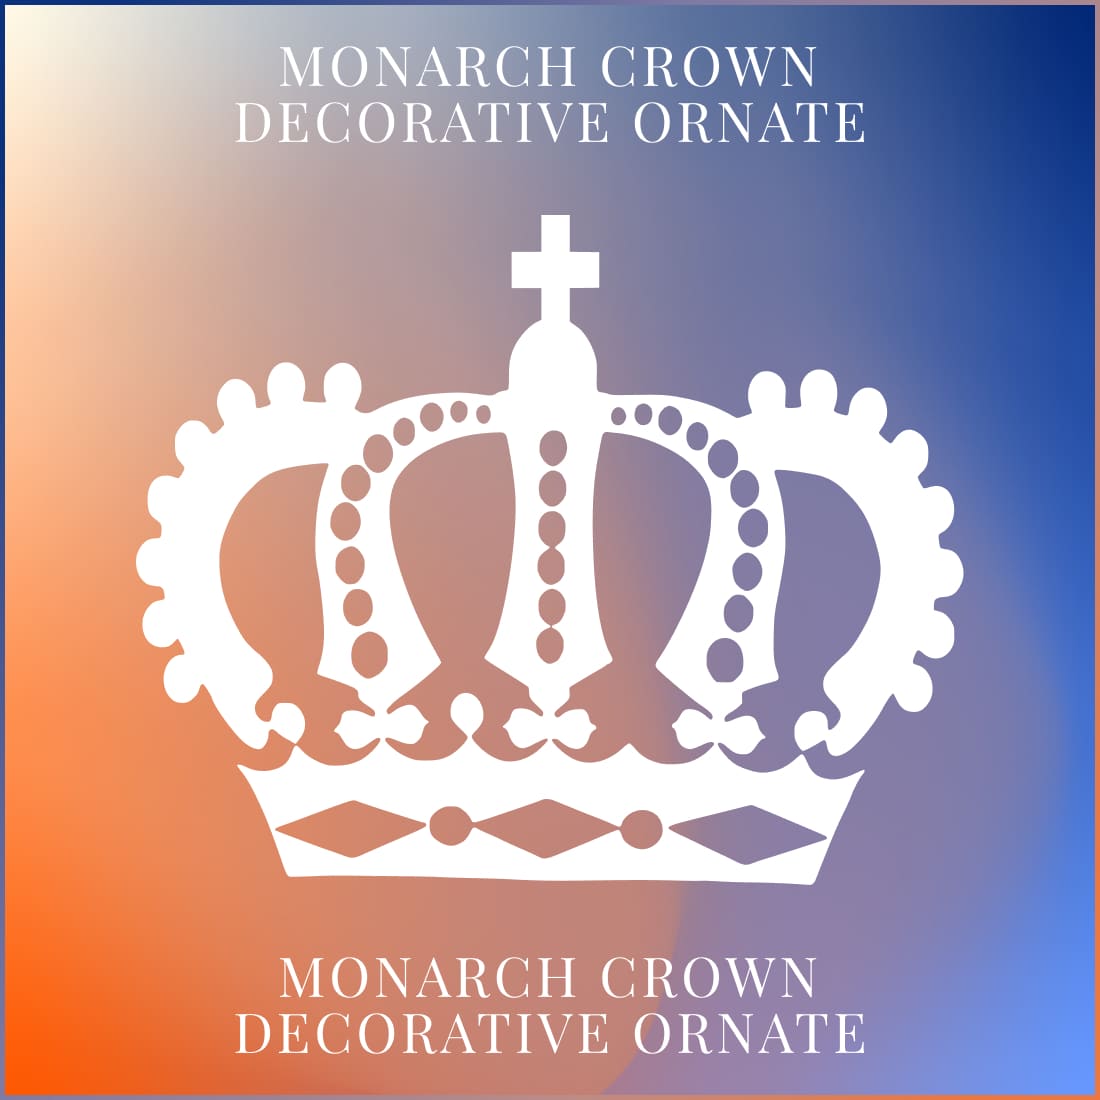 Monarch Crown Decorative Ornate main cover.